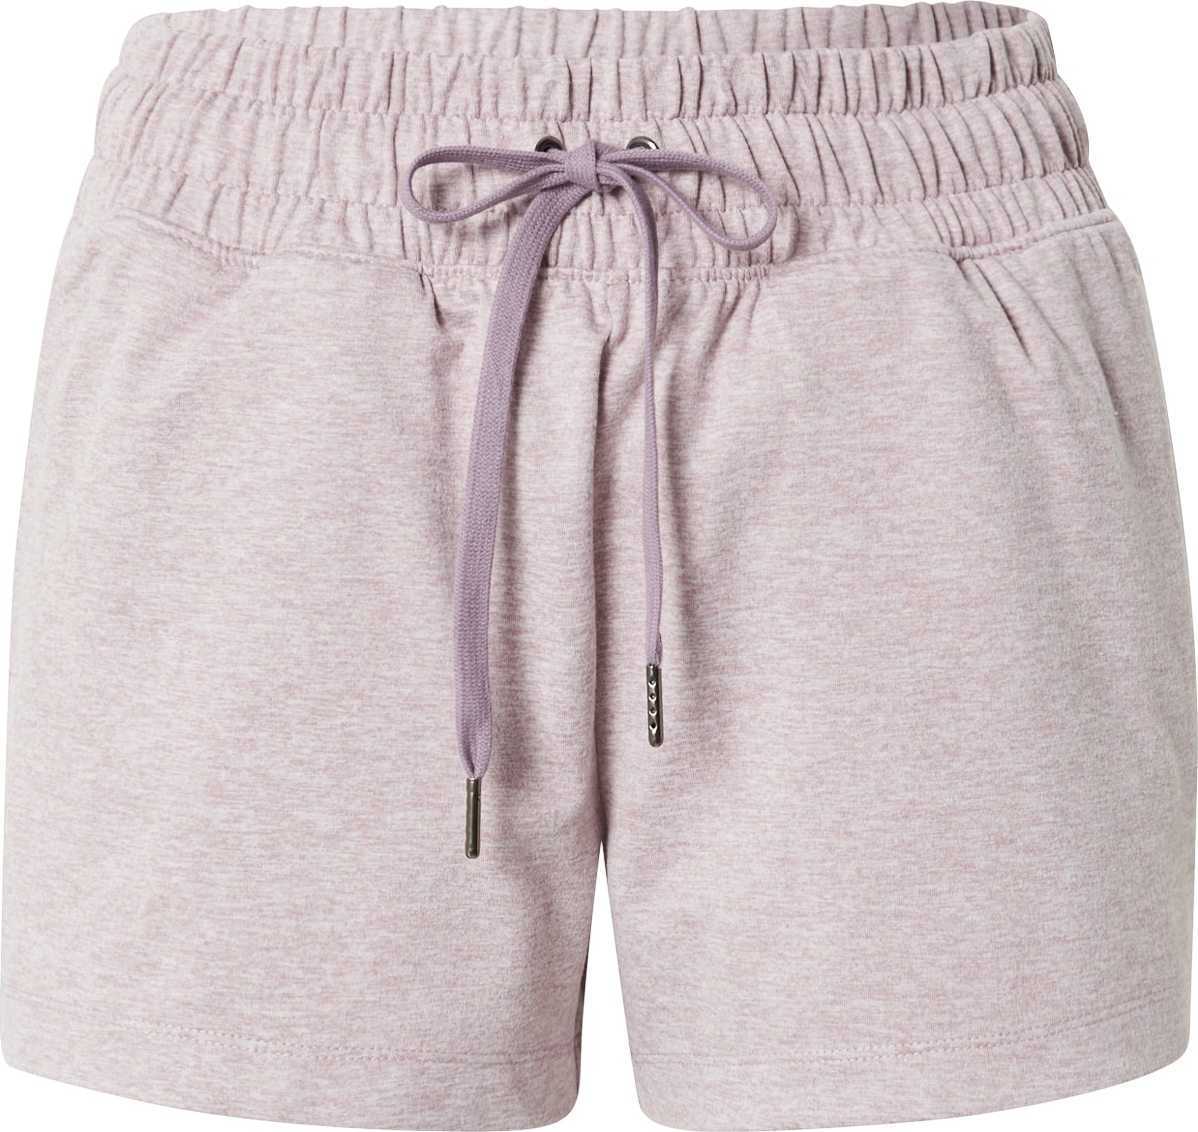 Marika Sportovní kalhoty fialový melír